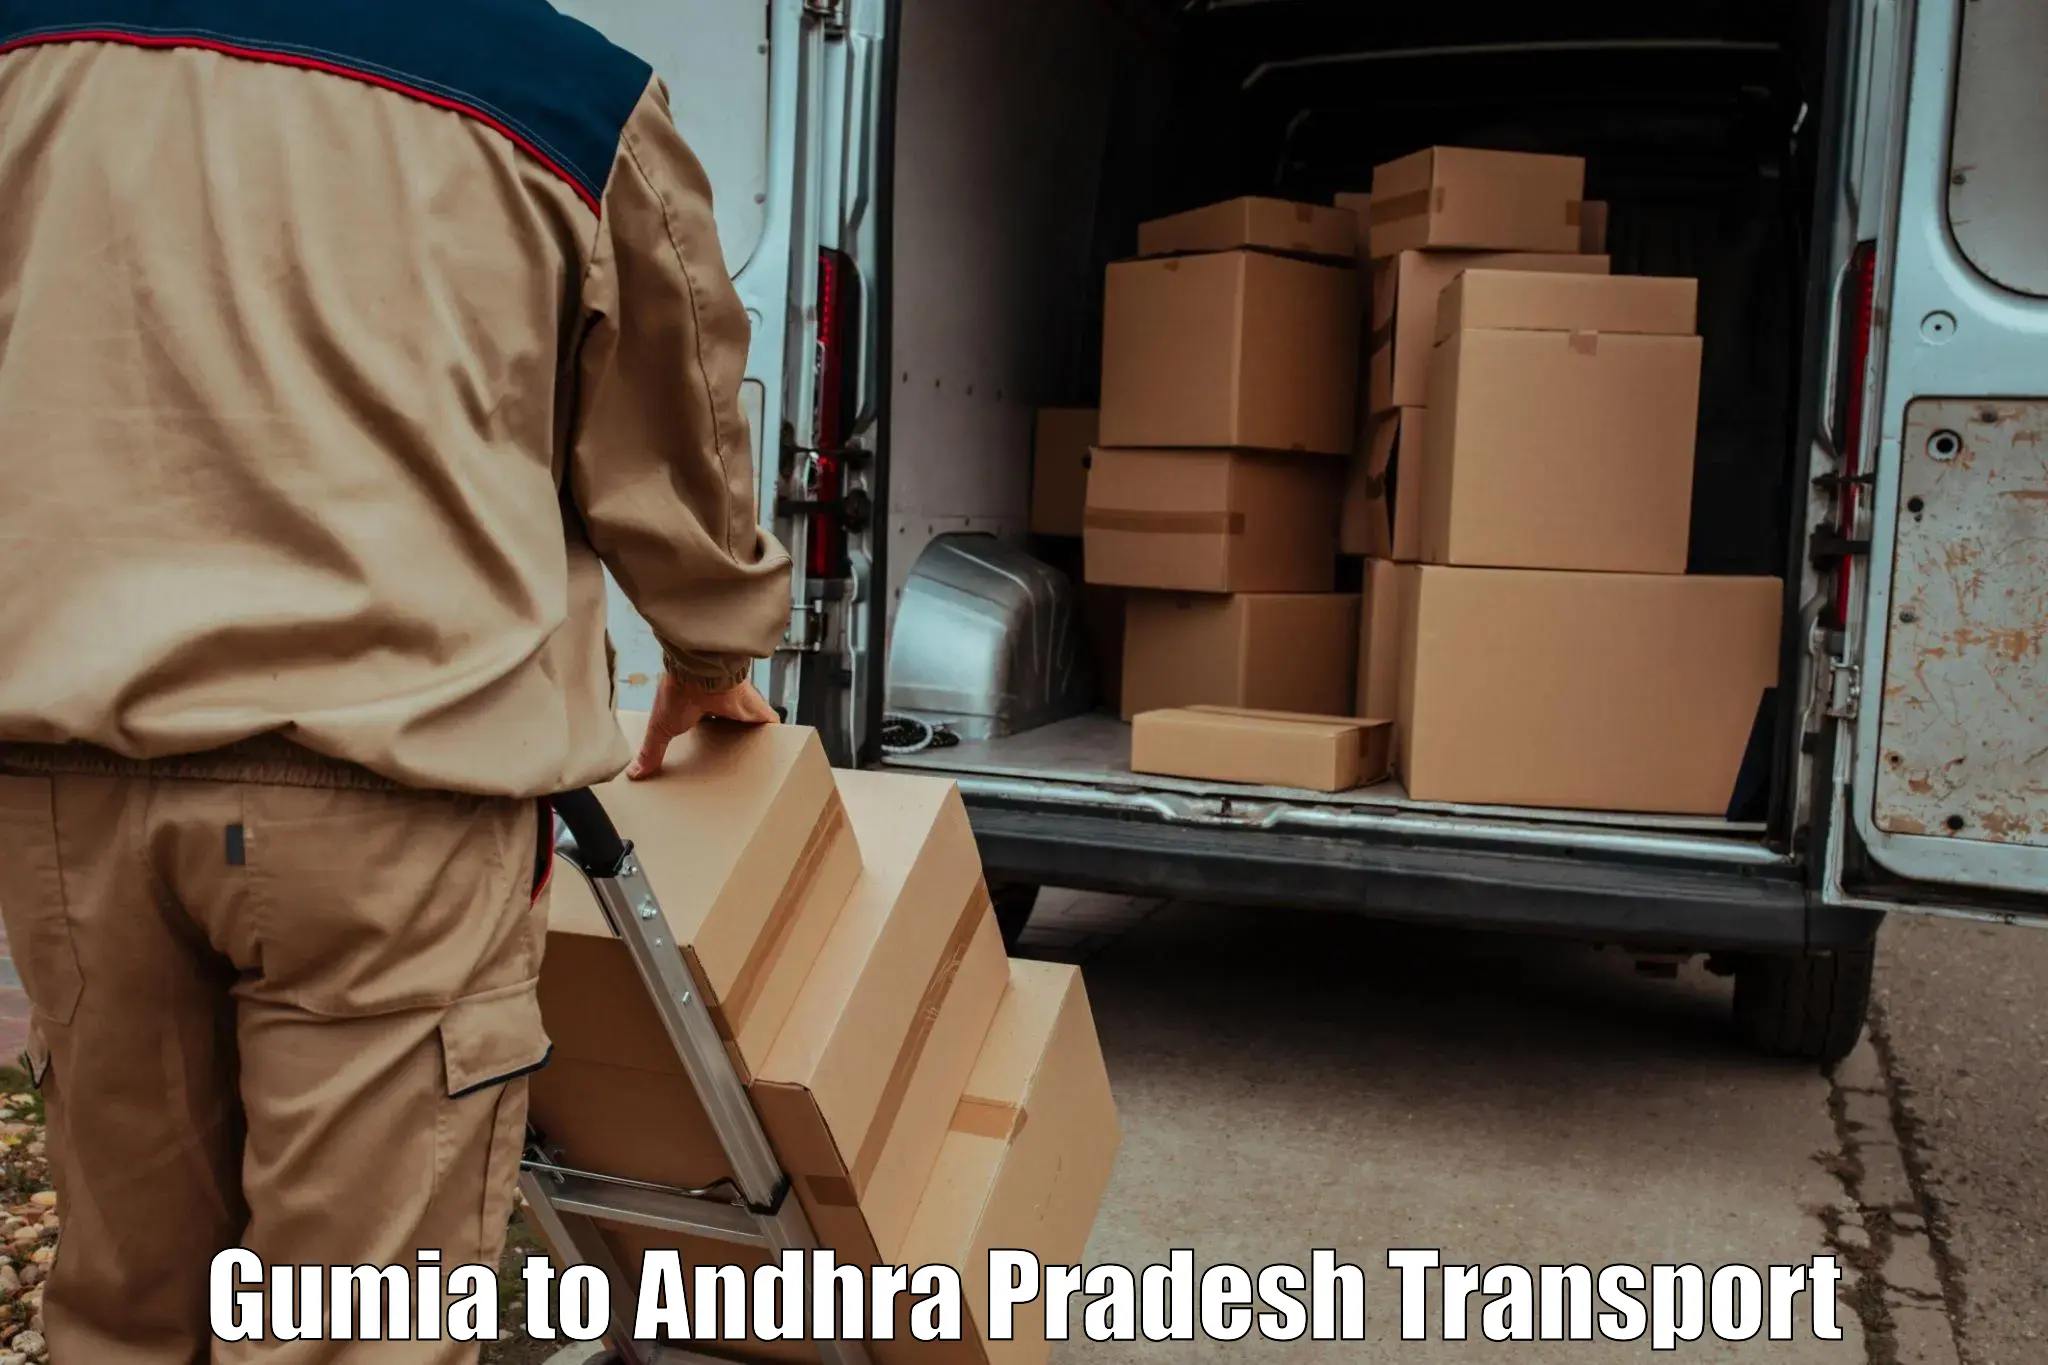 Container transport service Gumia to Amalapuram